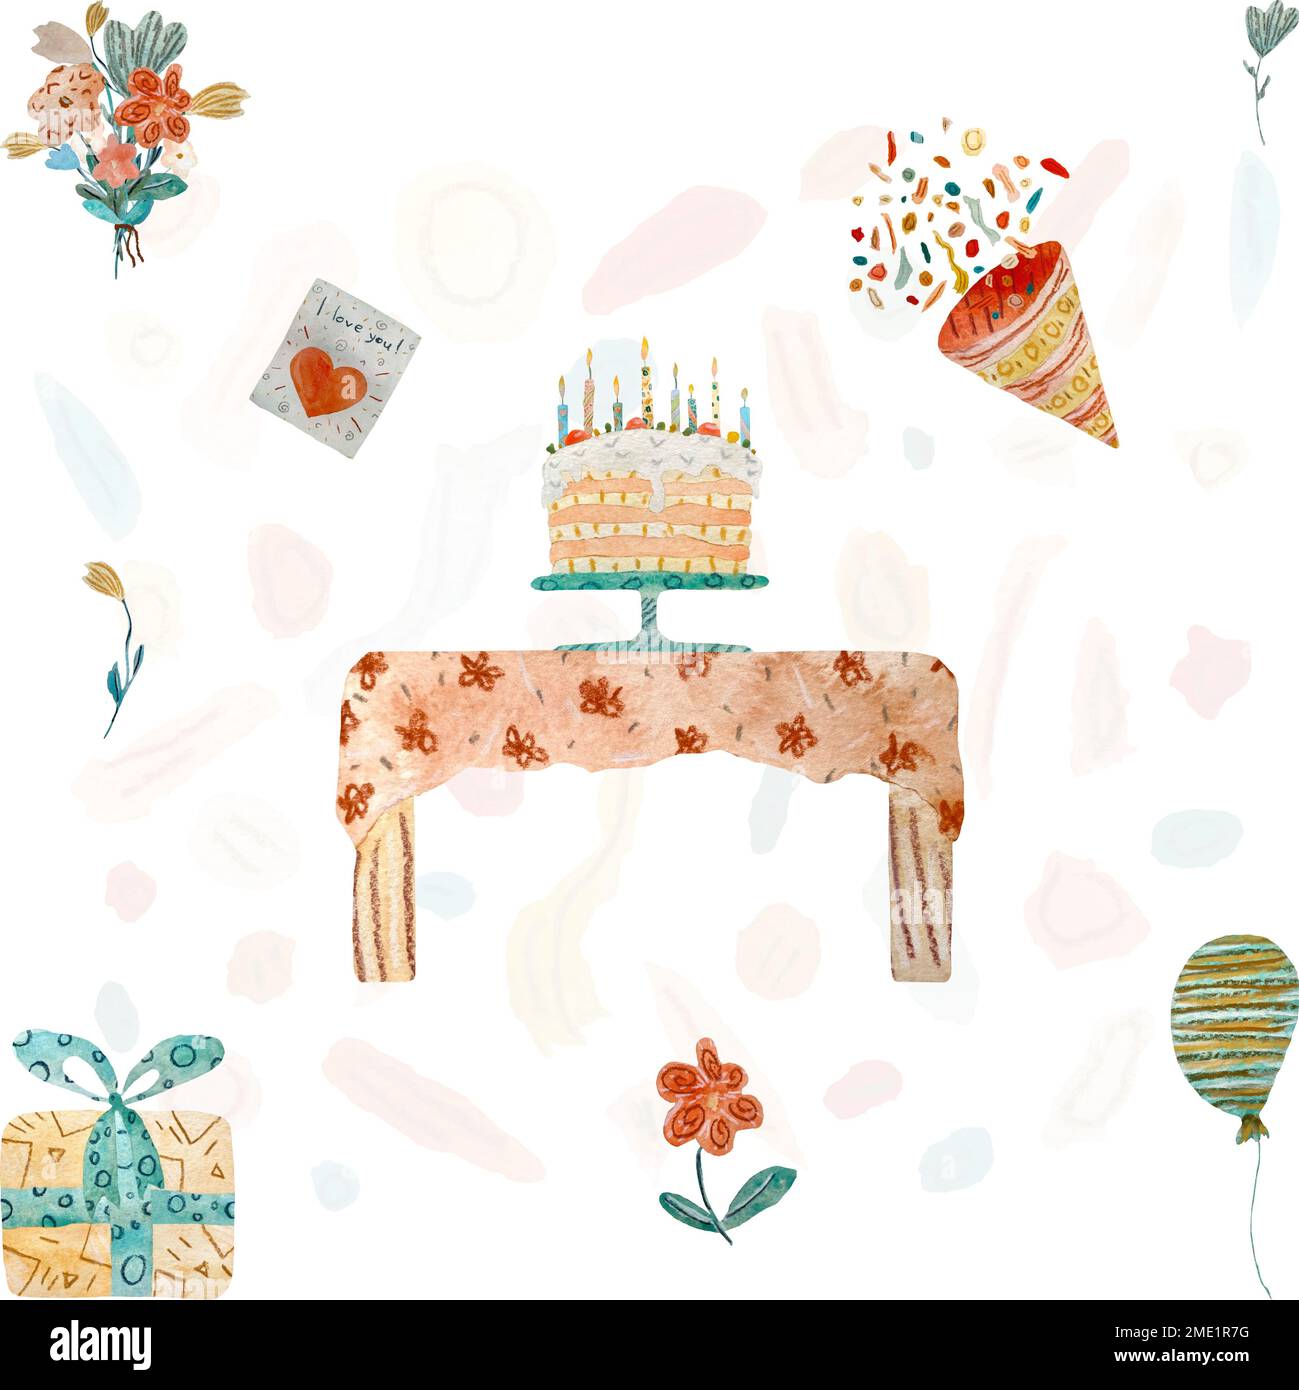 Joyeux anniversaire table gâteau ballon carte aquarelle Banque D'Images